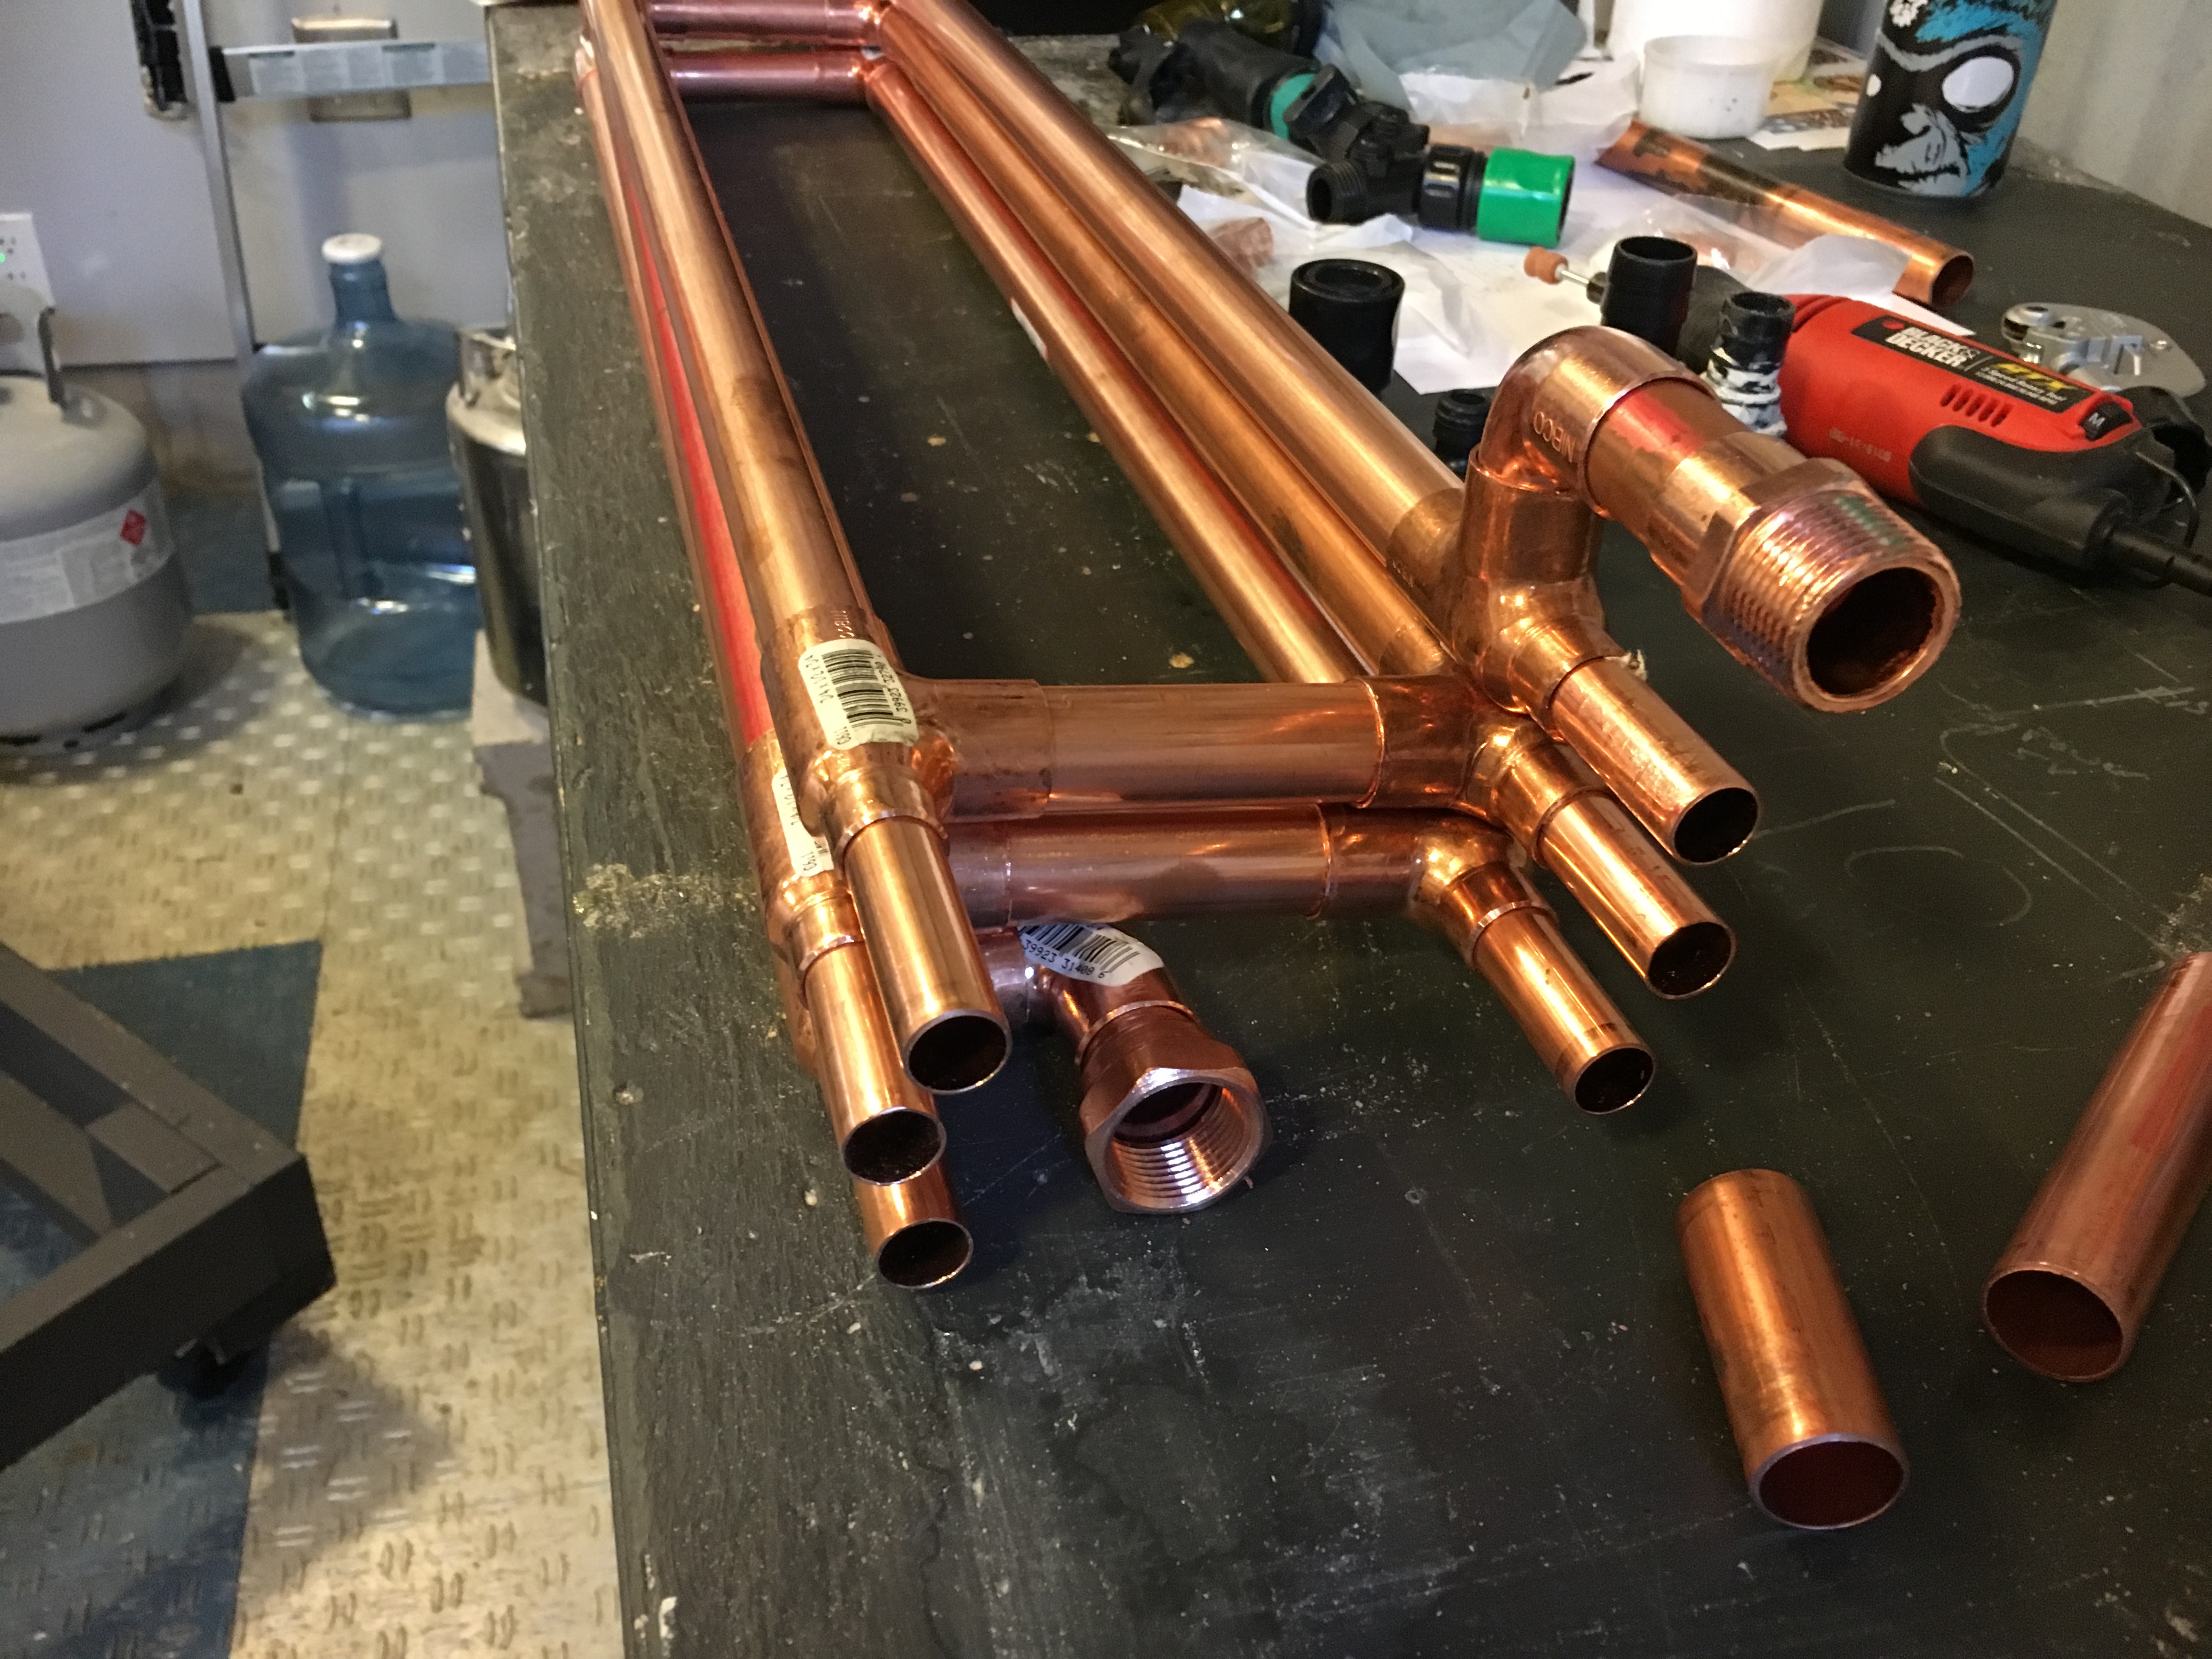 DIY 1/2 Copper Chiller Kit - Pre-Soldered Fittings – JaDeD